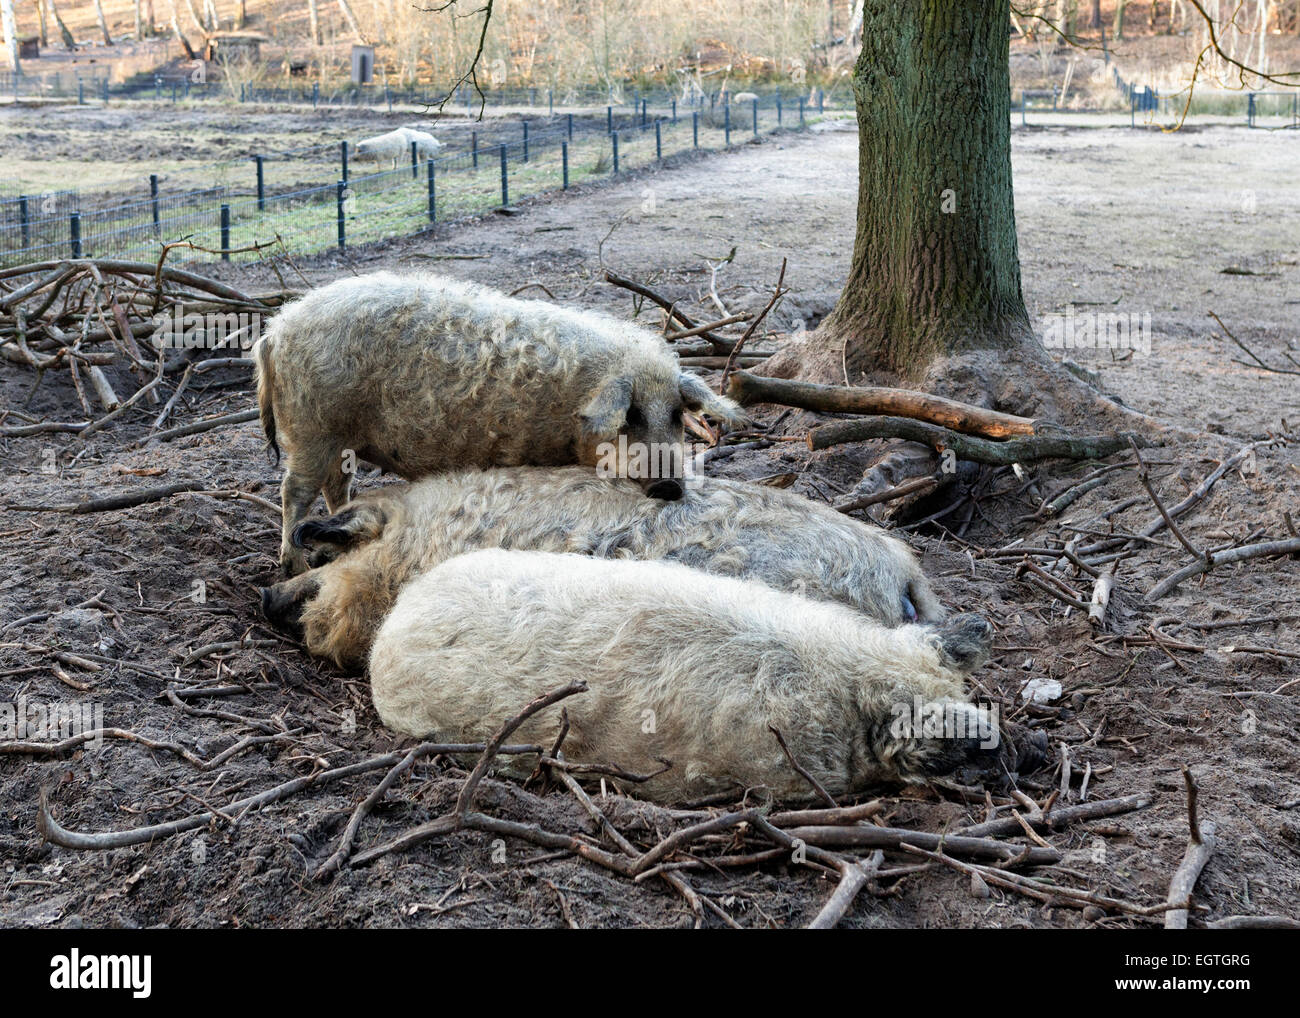 Germany, Schorfheide Game Reserve, Wildpark Schorfheide Wild park. Mangalitza-Wollschwein woolly pigs under threat of extinction Stock Photo